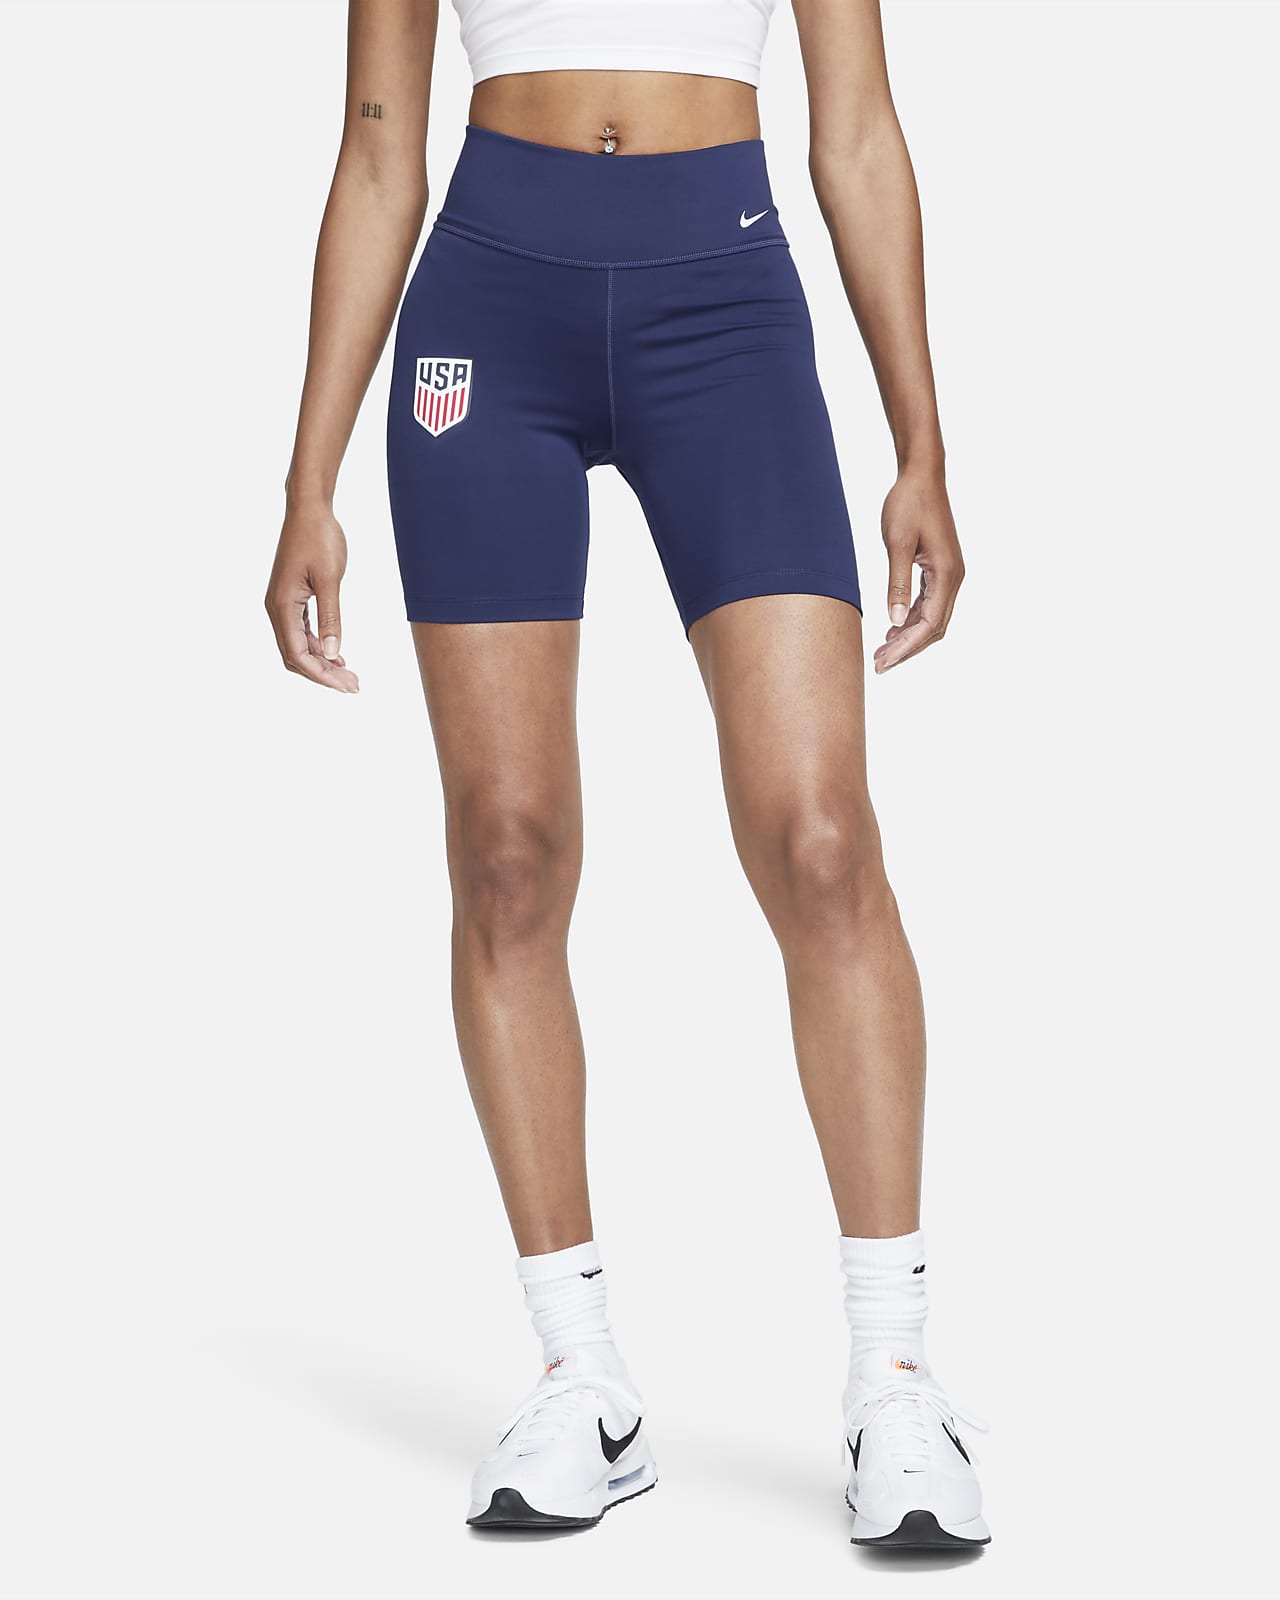 Shorts de ciclismo Nike One de tiro medio de 18 cm para mujer U.S.